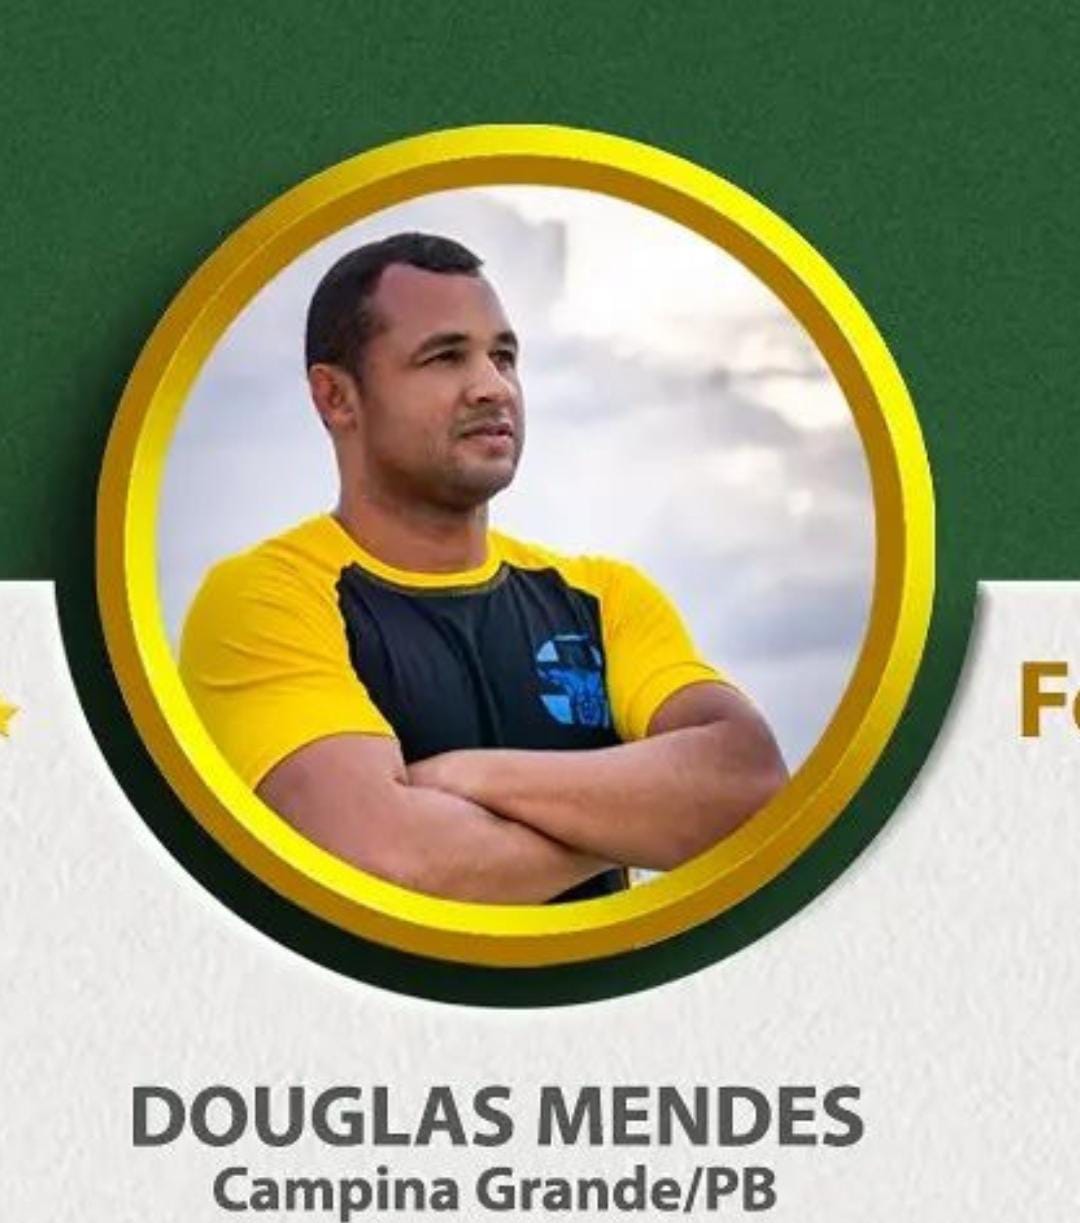 Douglas Mendes